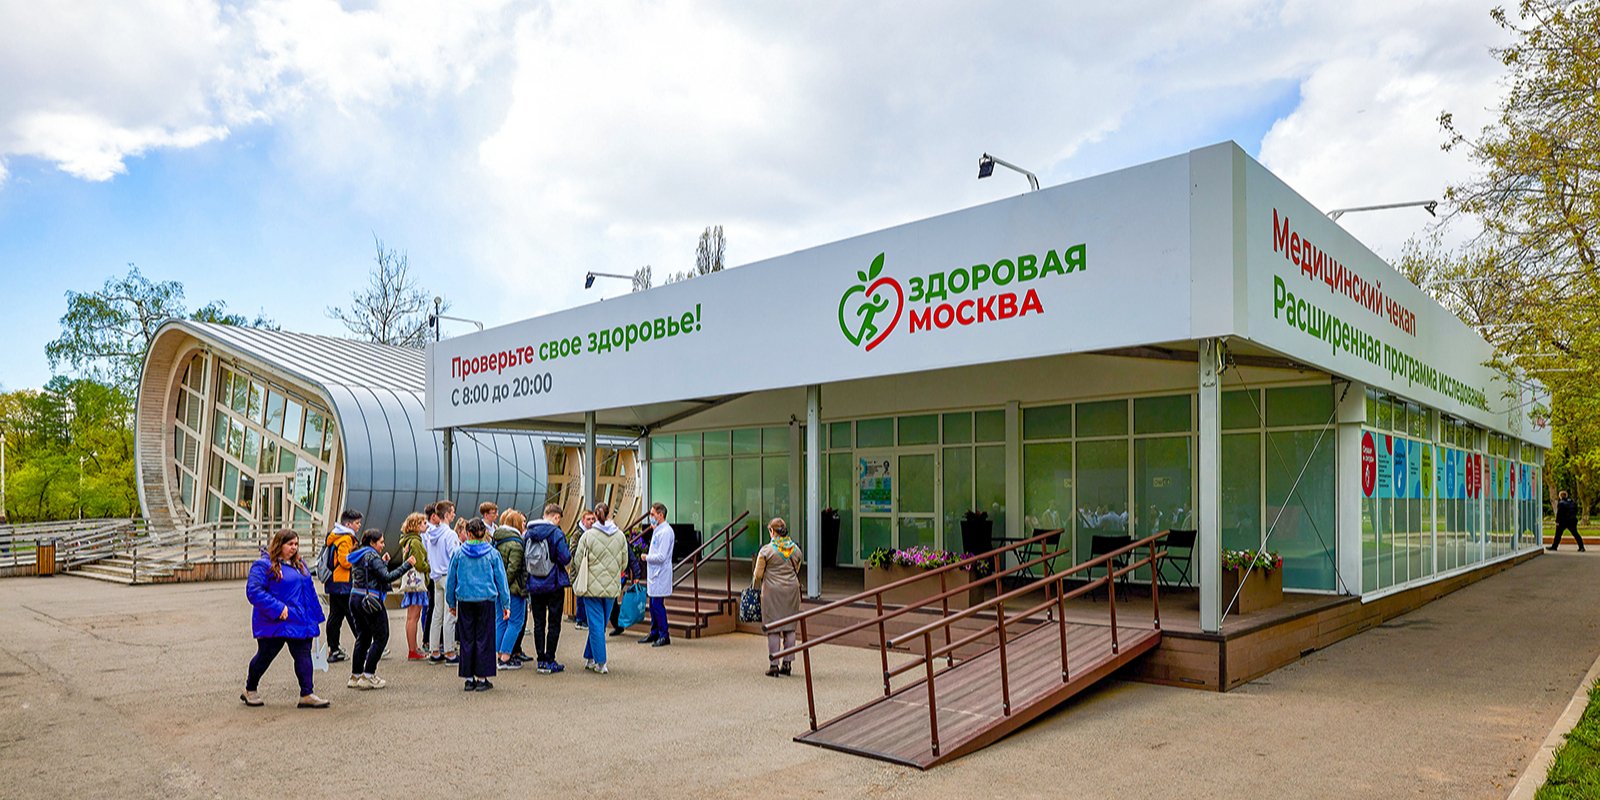 Посещать павильоны «Здоровая Москва» лучше в будни после обеда